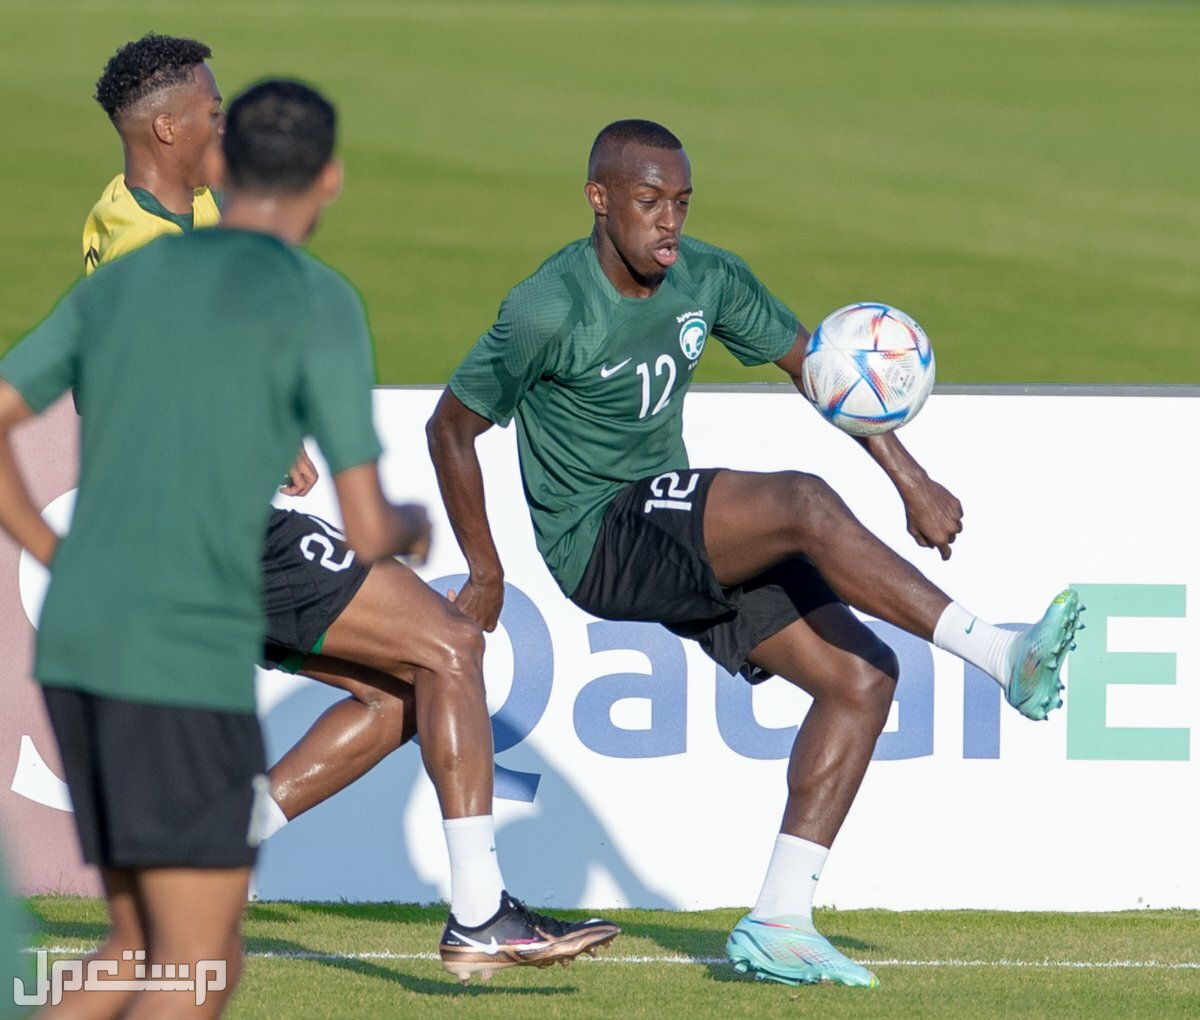 السعودية وبولندا مشاهدة مجانية لمباريات كاس العالم 2022 في البحرين المنتخب السعودي